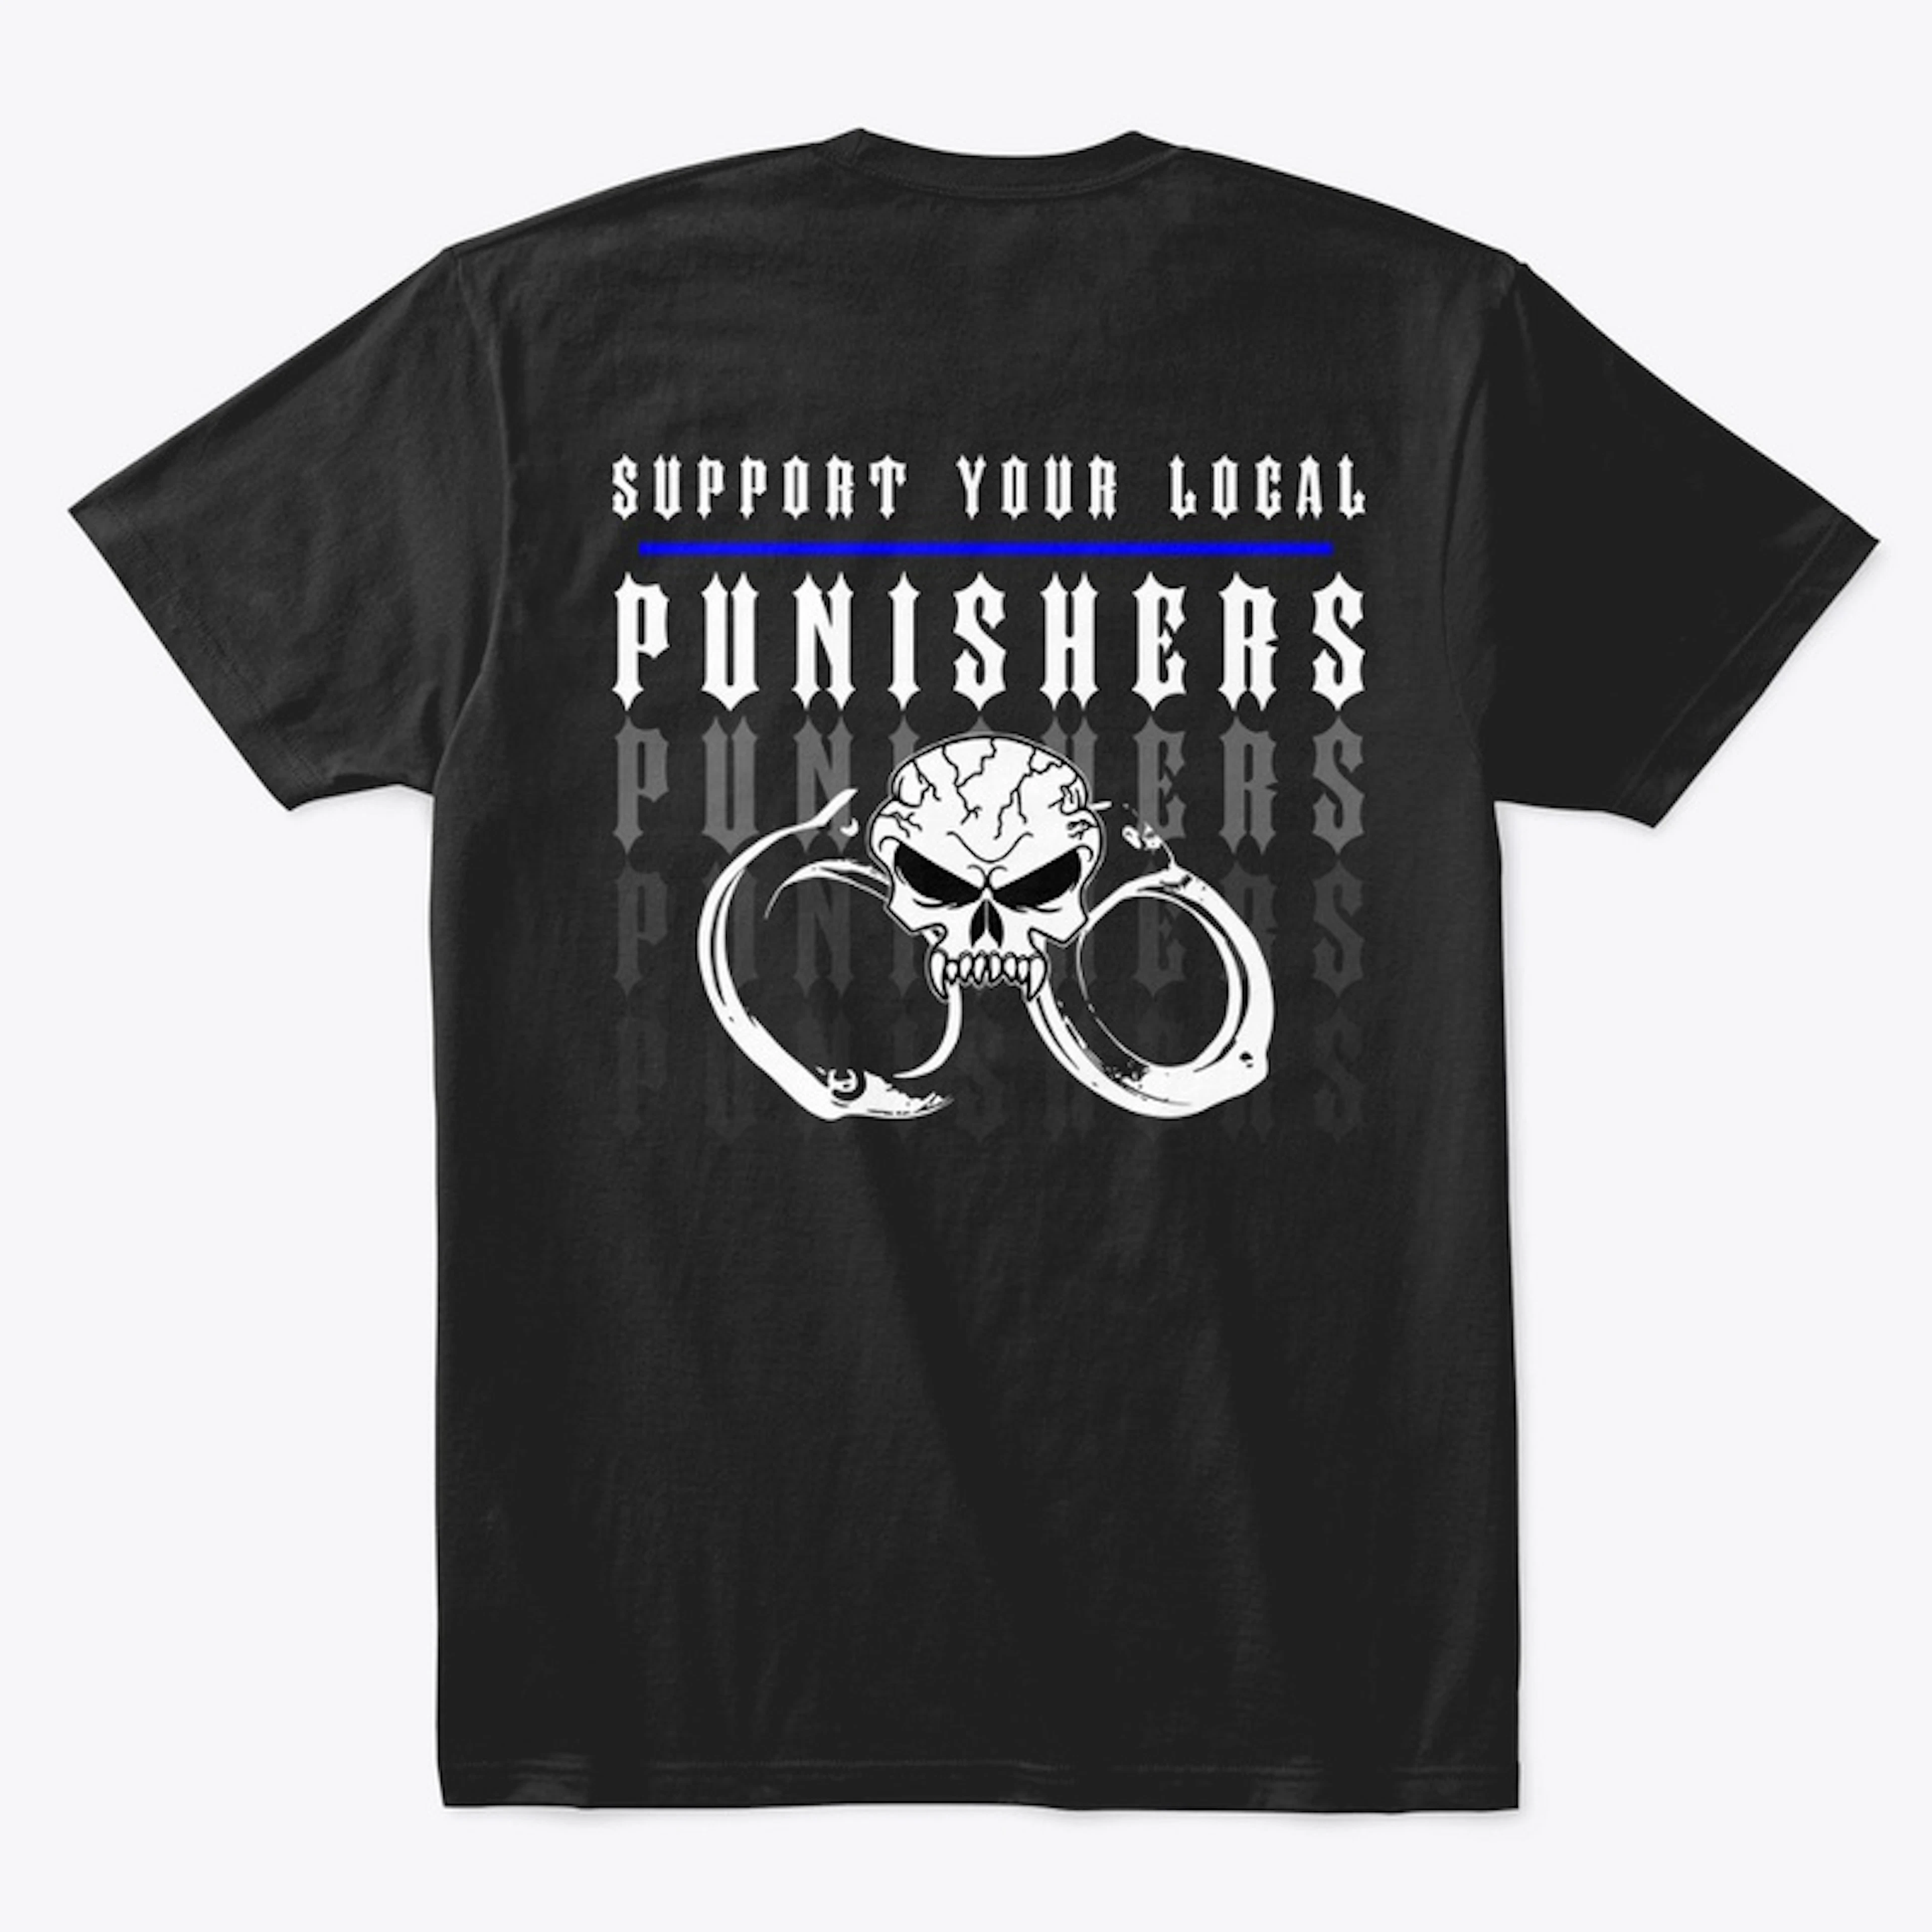 Punishers Supporter Handcuffs Design